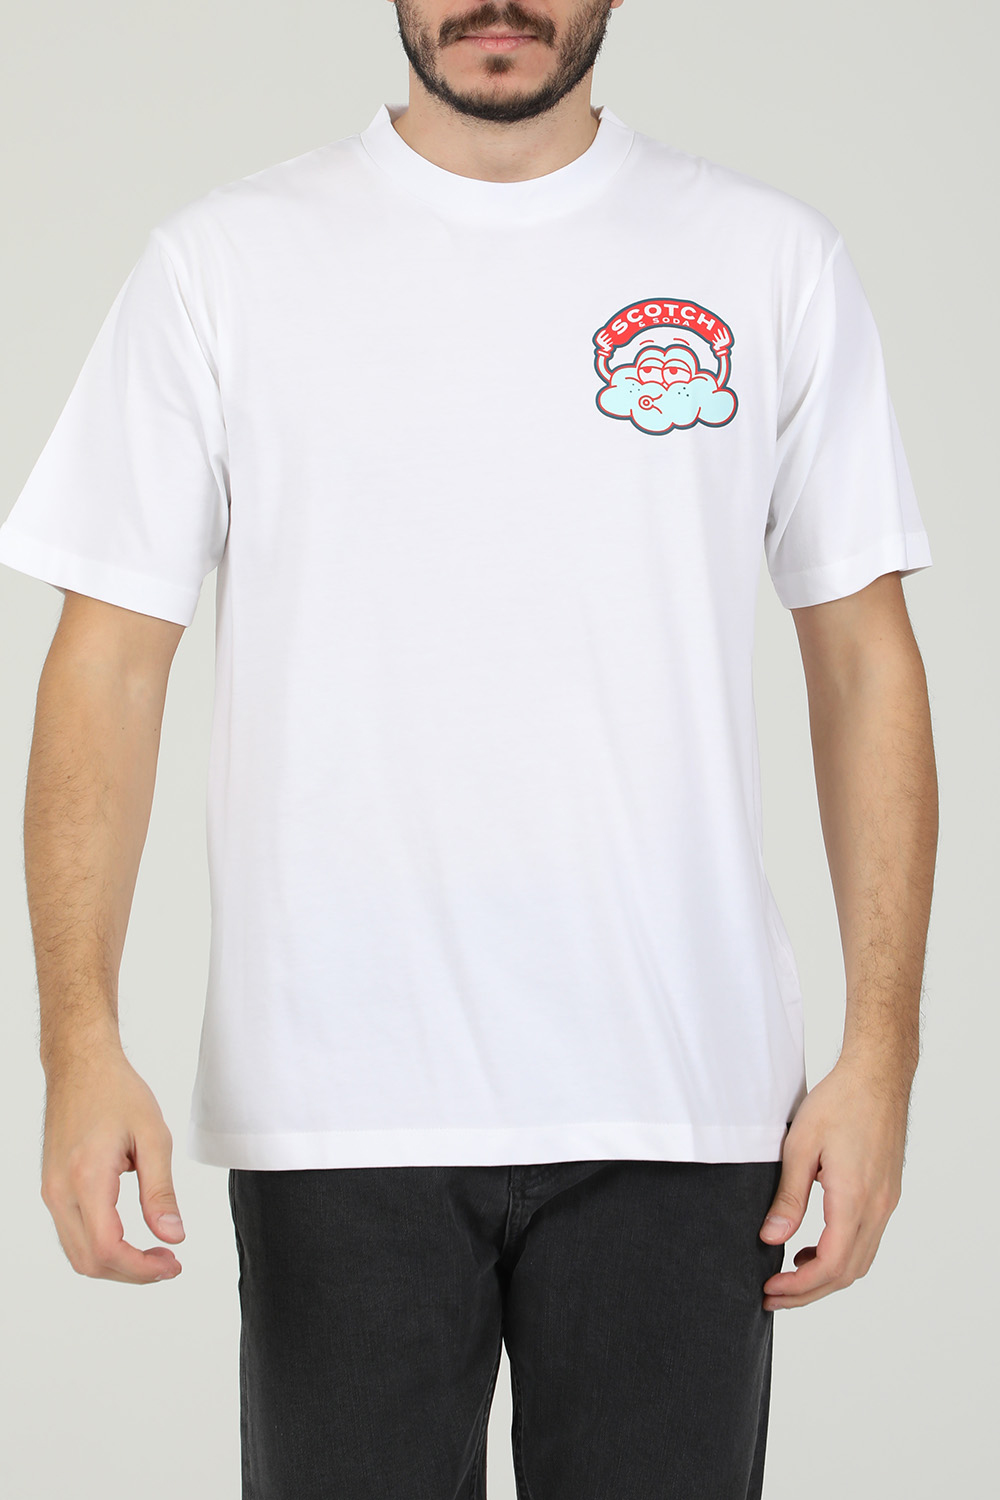 SCOTCH & SODA – Ανδρική κοντομάνικη μπλούζα SCOTCH & SODA λευκή 1821048.0-9191